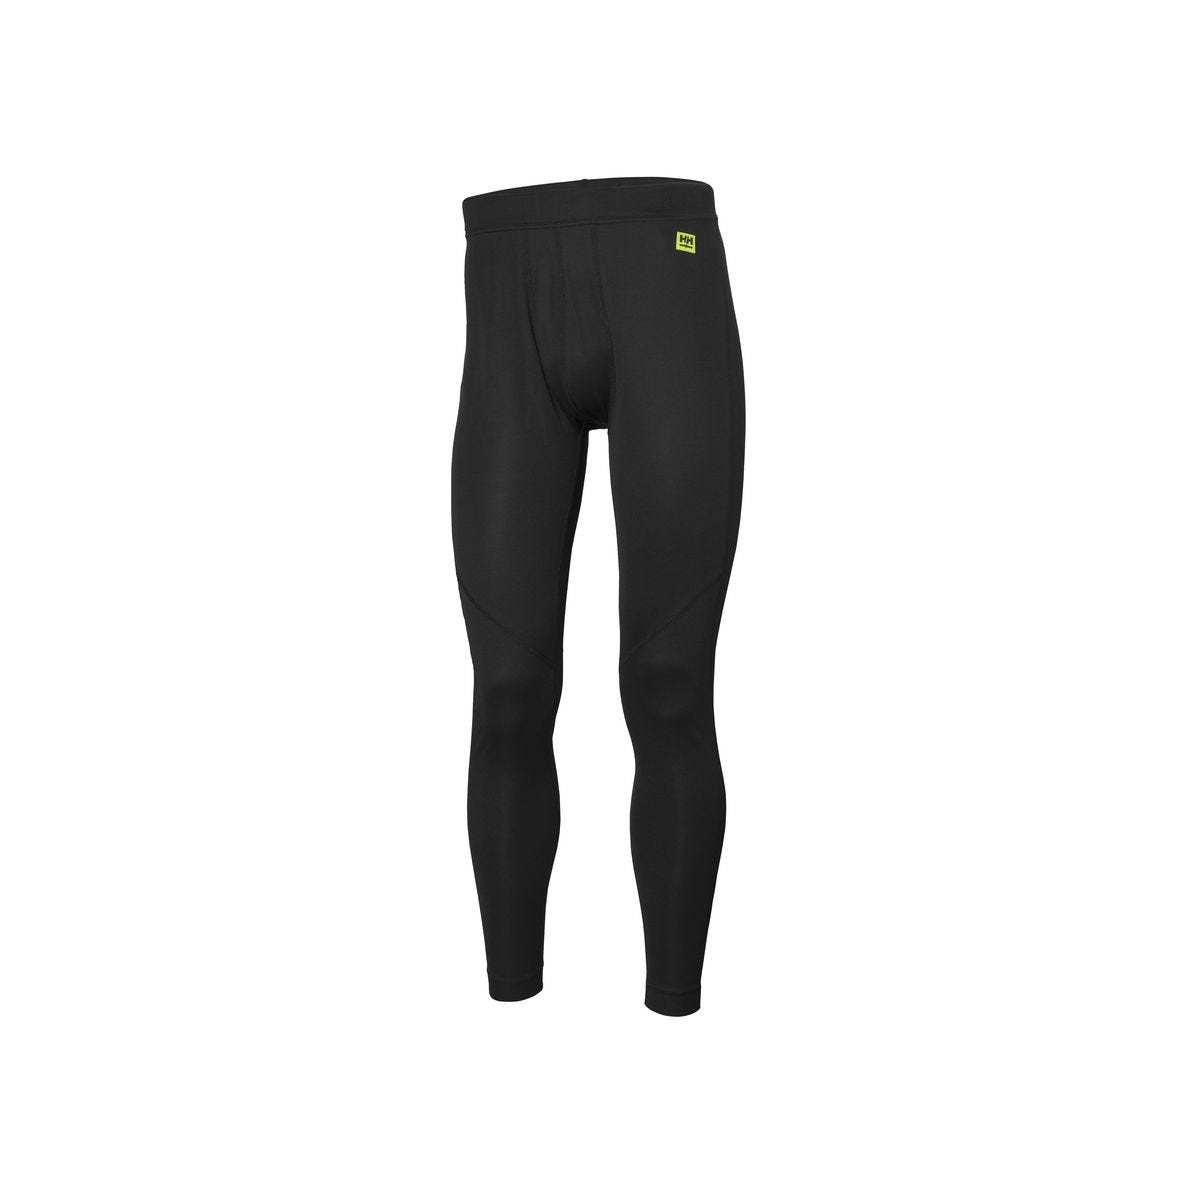 Pantalon sous-vêtement technique Lifa Noir - Helly Hansen - Taille XL 0